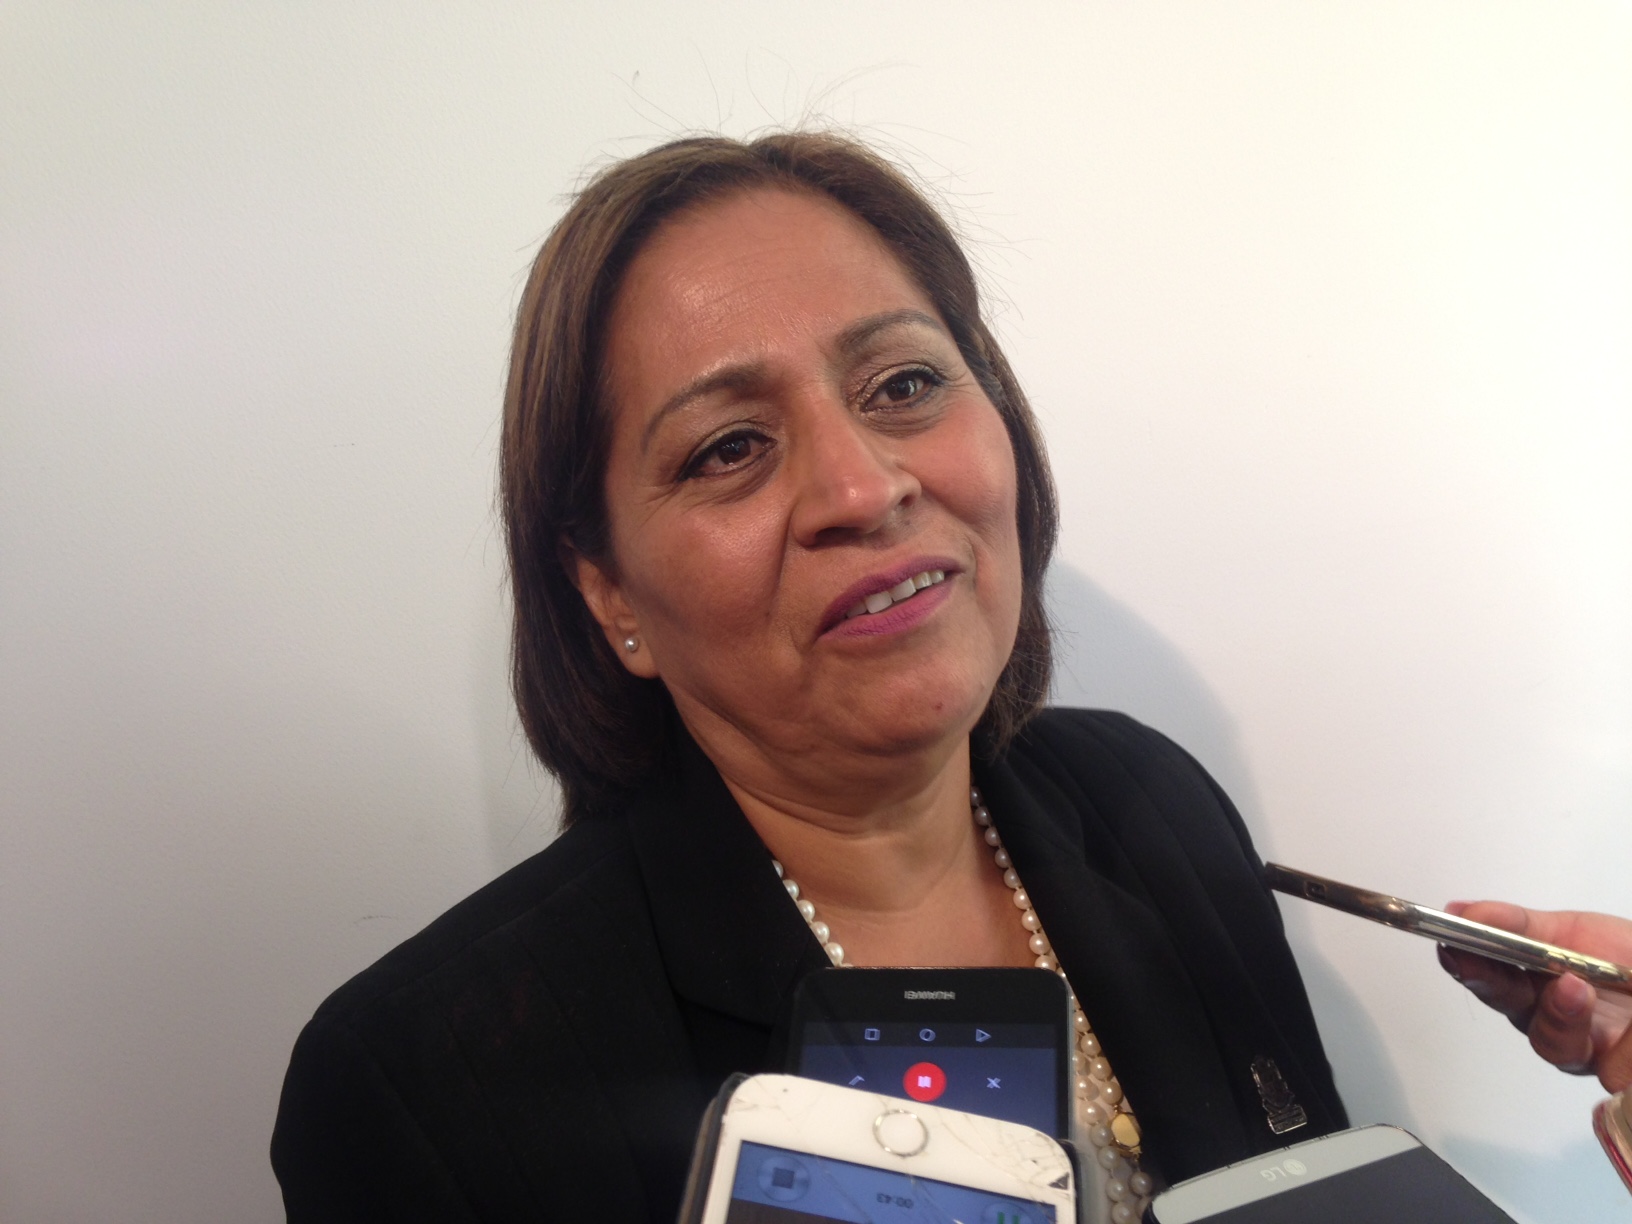  Cambio de fecha en informe de gobierno estatal es viable, afirma Carmelita Zúñiga